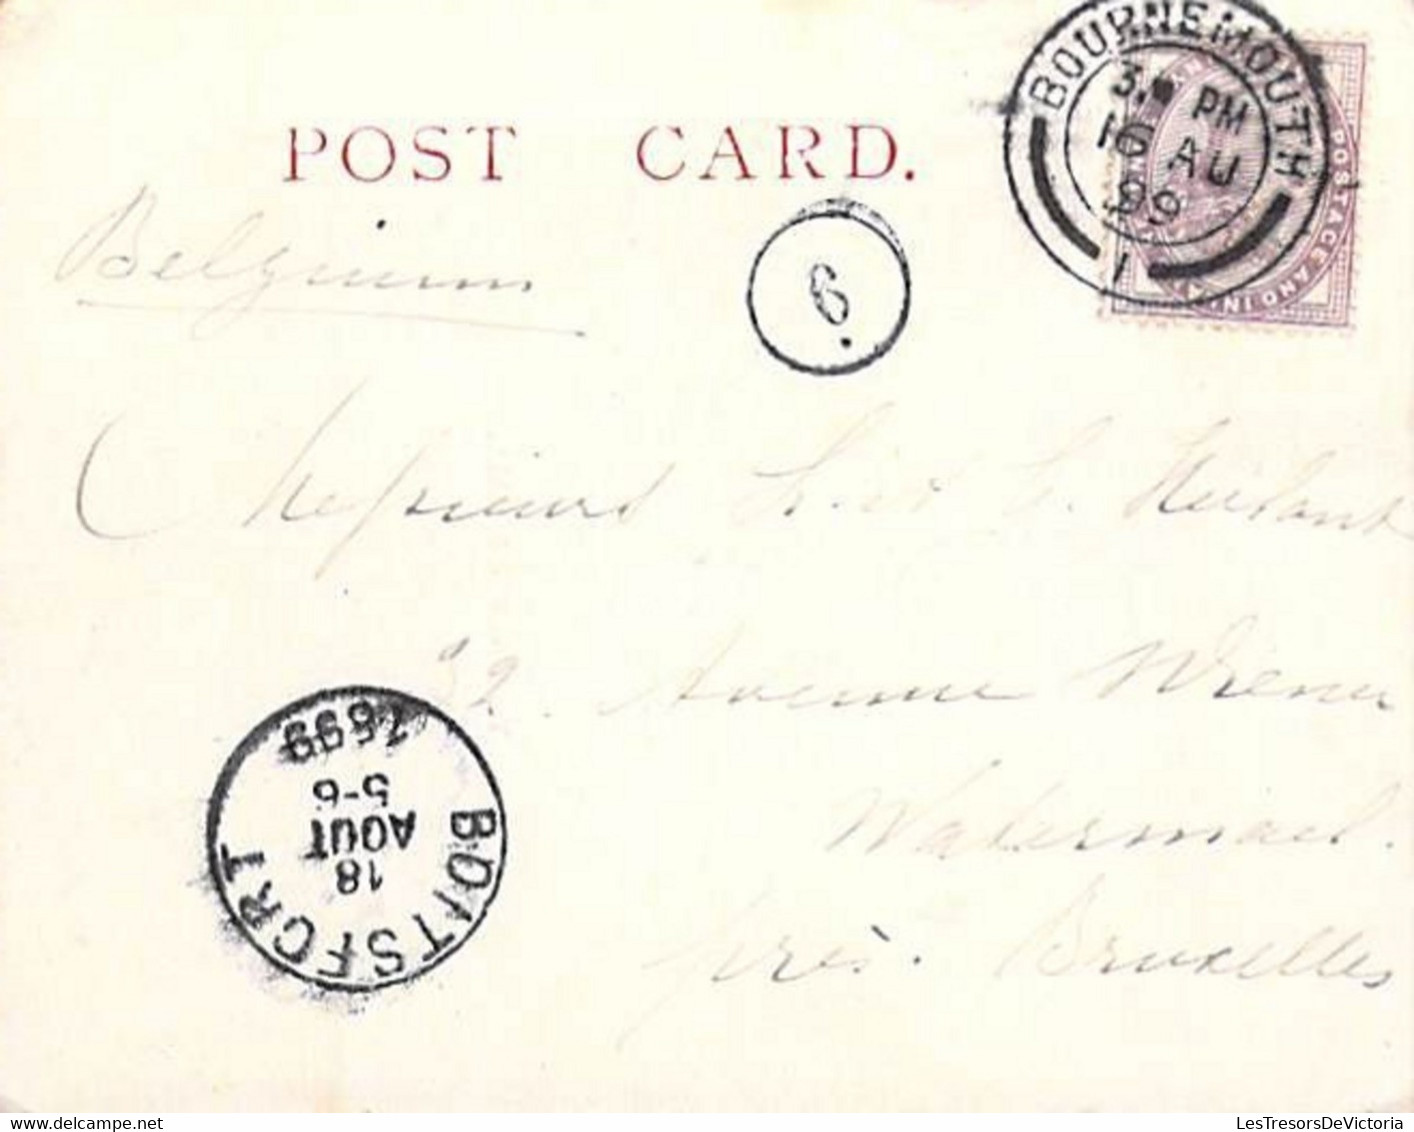 Angleterre - Lot de 4 cartes nuages - Oblitéré boitsfort 1899 - Format 11.2/9 cm - Carte Postale Ancienne